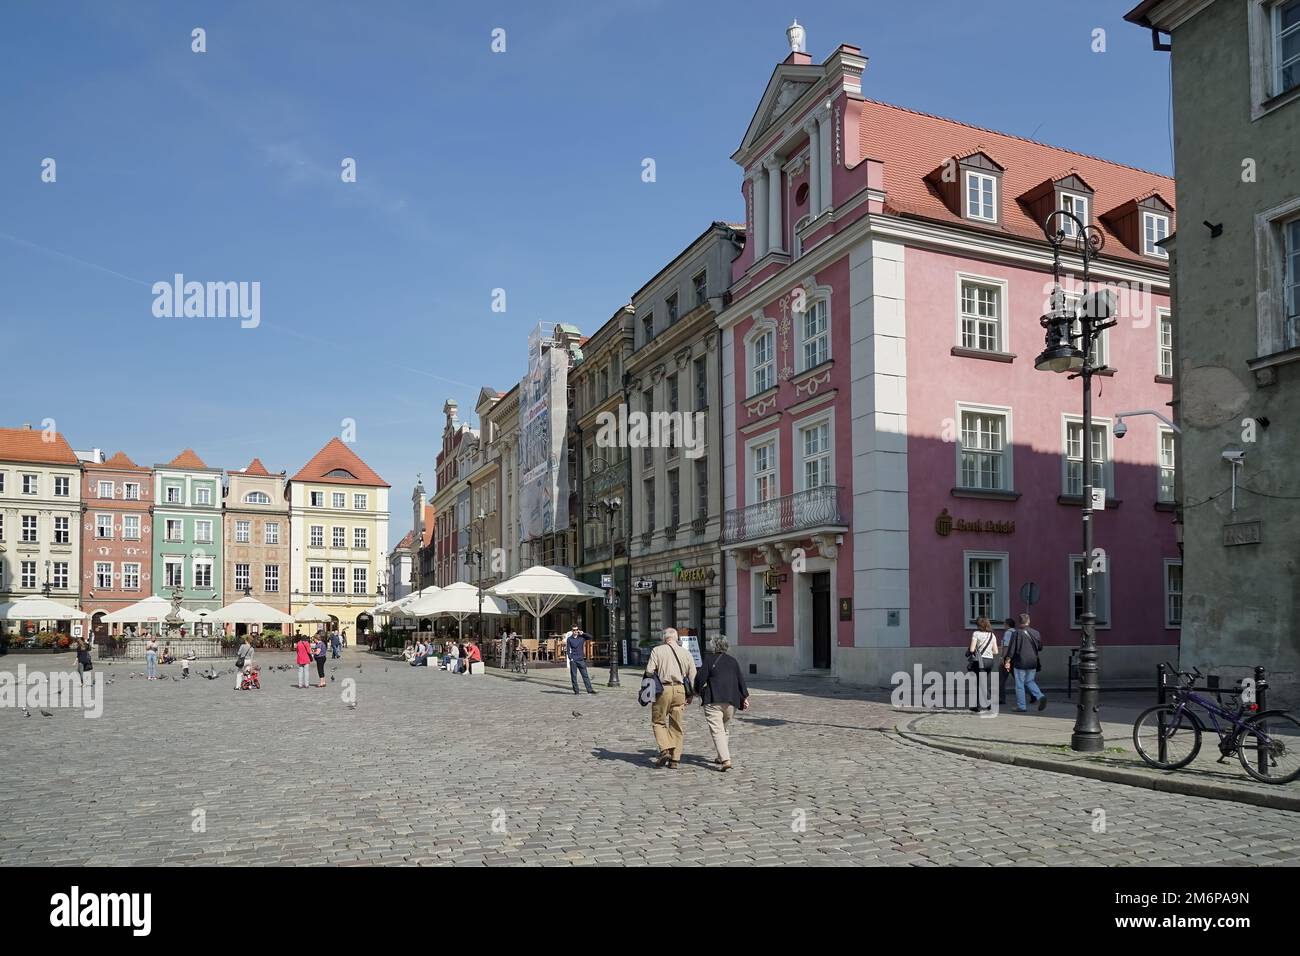 Main Square in Poznan Poland on September 16, 2014 Stock Photo